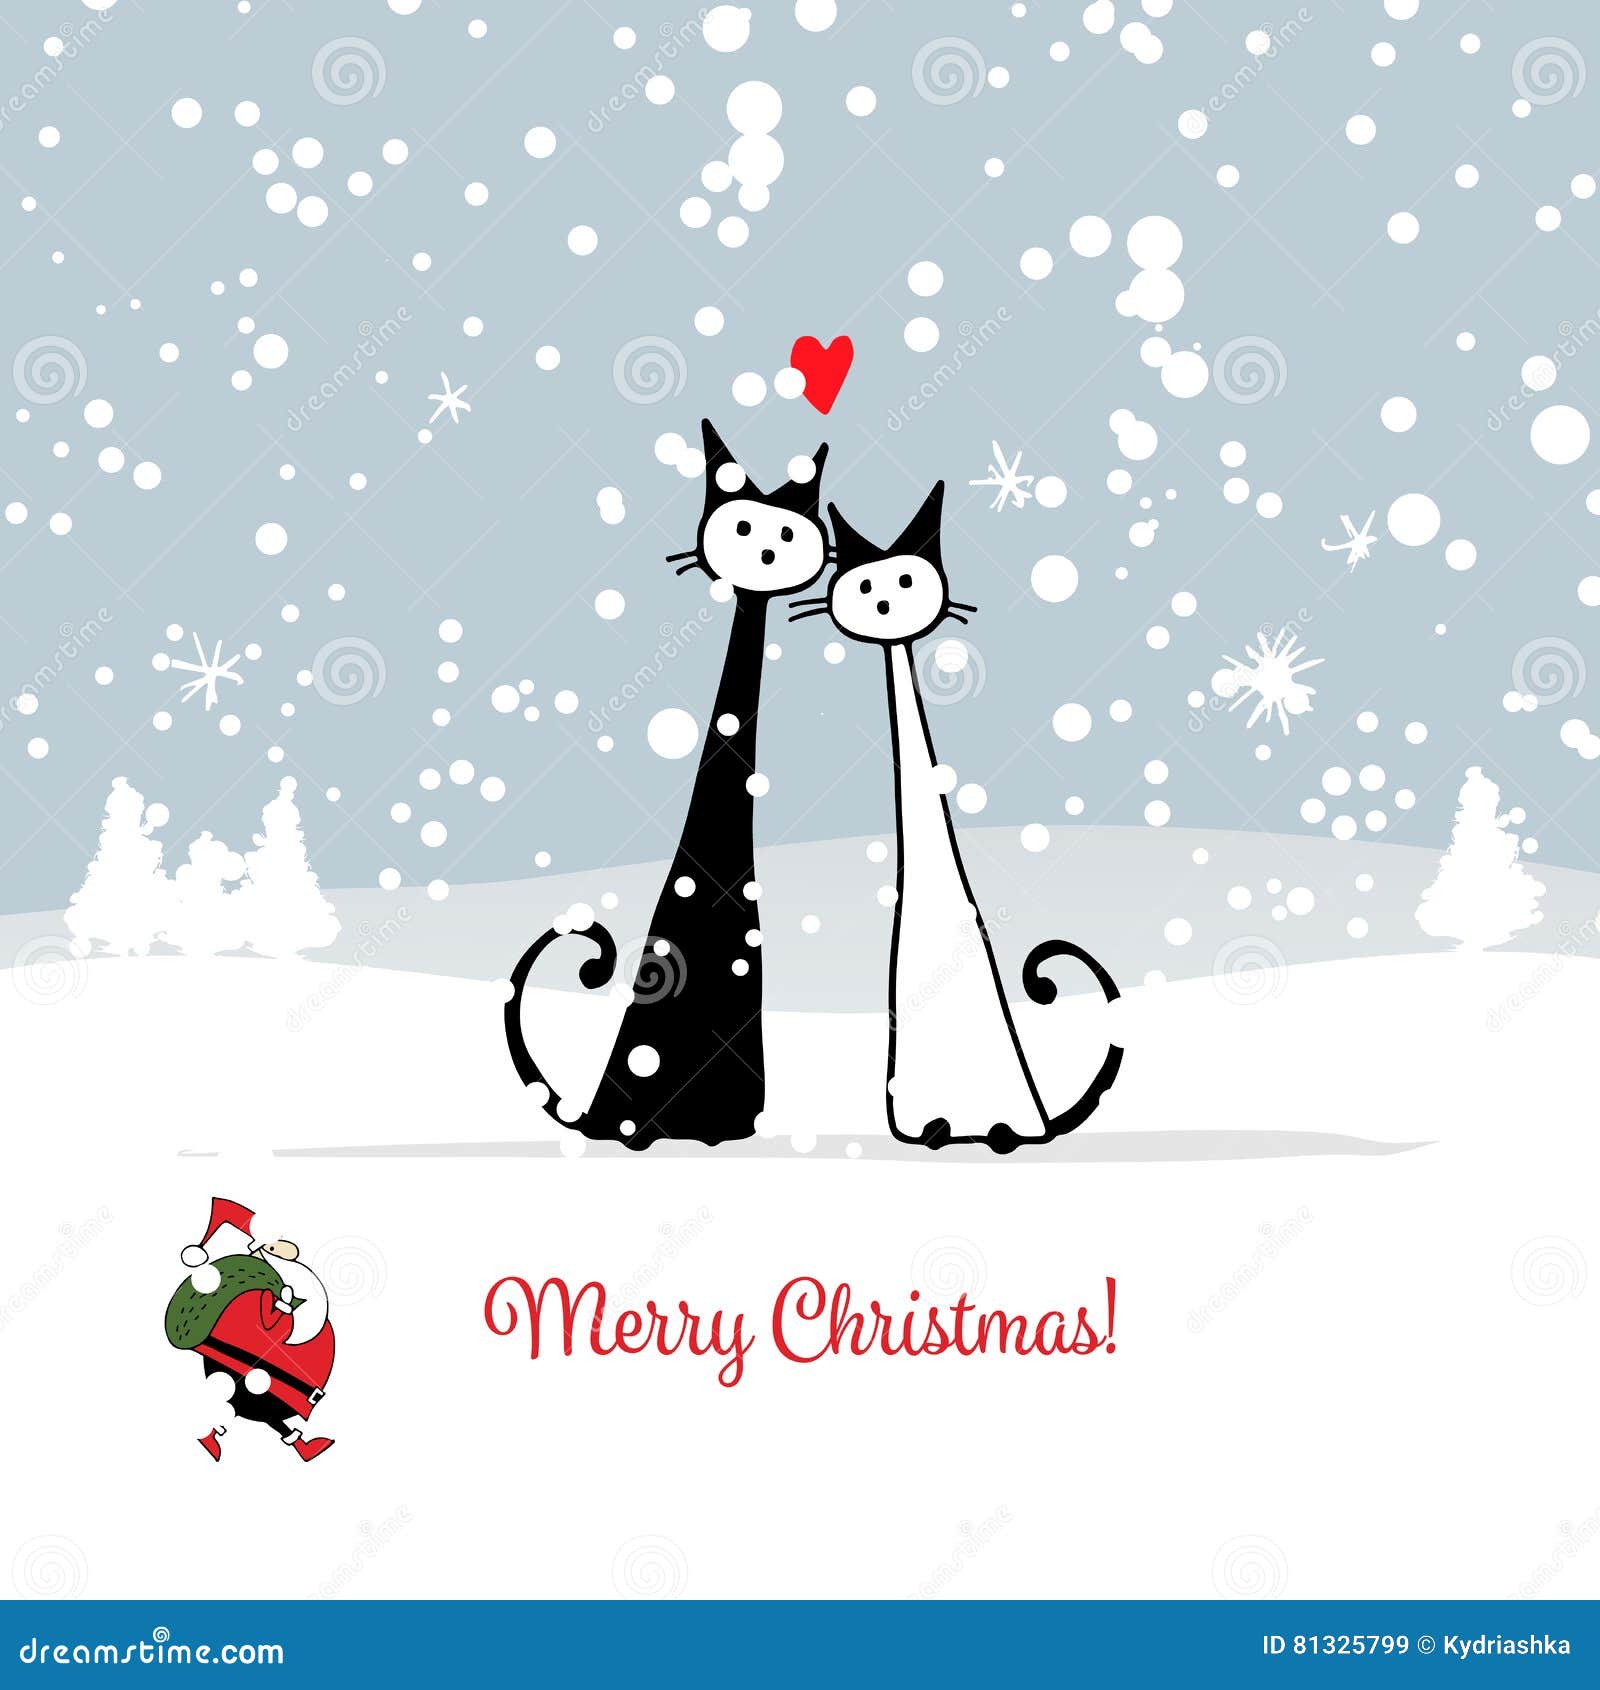 Sfondi Natalizi Con Animali.Cartolina Di Natale Con Le Coppie Dei Gatti E Di Santa Illustrazione Vettoriale Illustrazione Di Cuore Scheda 81325799